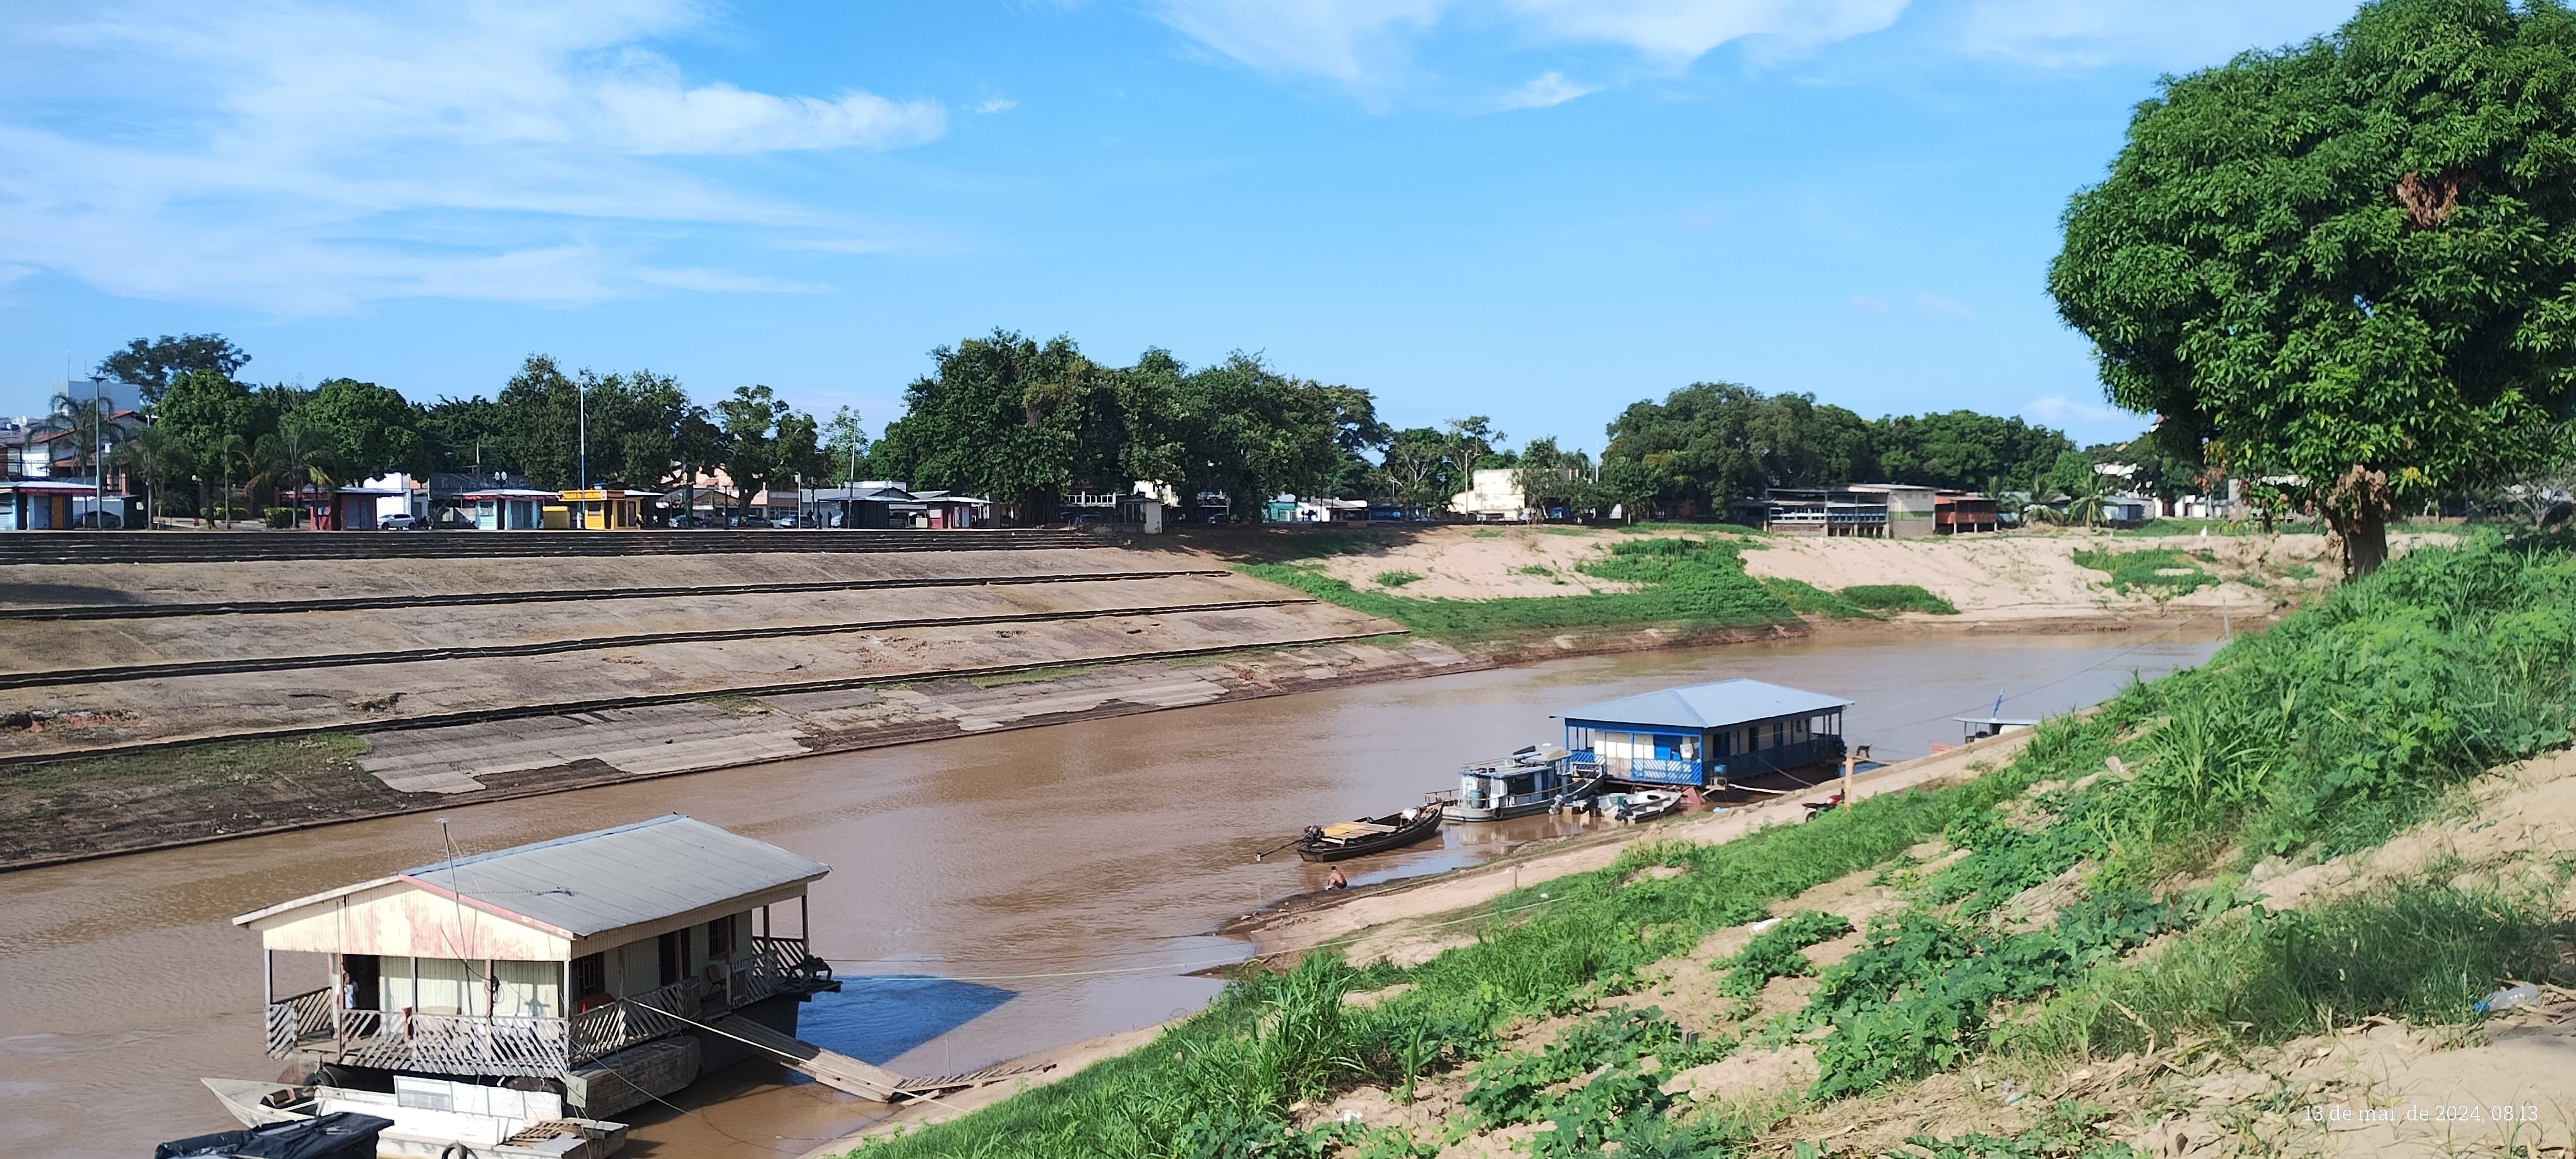 Rio Acre registra o menor nível dos últimos dez anos para maio em Rio Branco; enchente histórica fez água transbordar há 3 meses